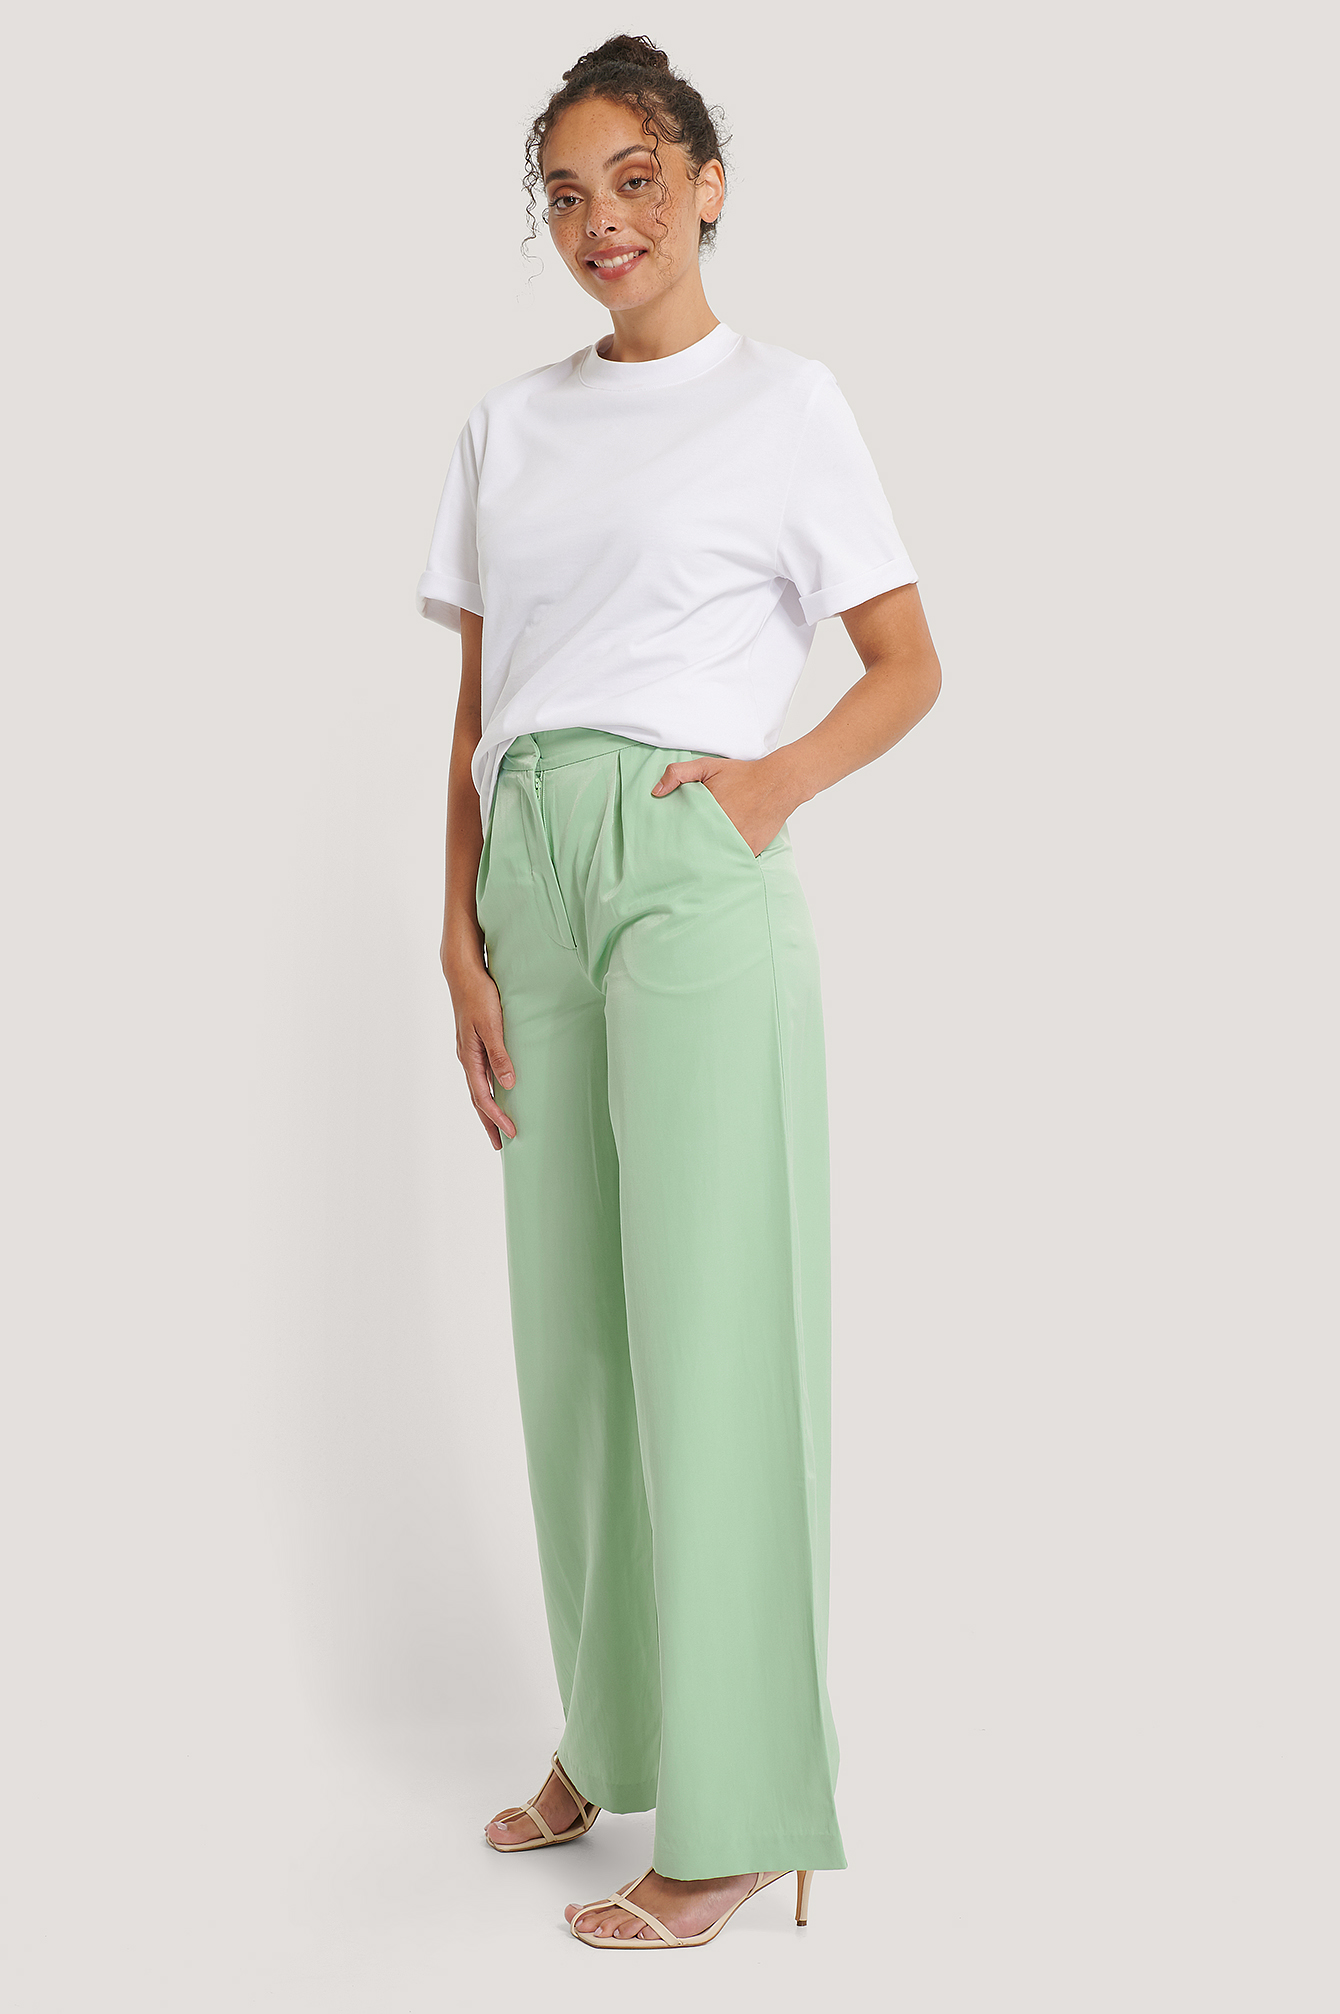 Pastel Green Pantalon Jambe Large